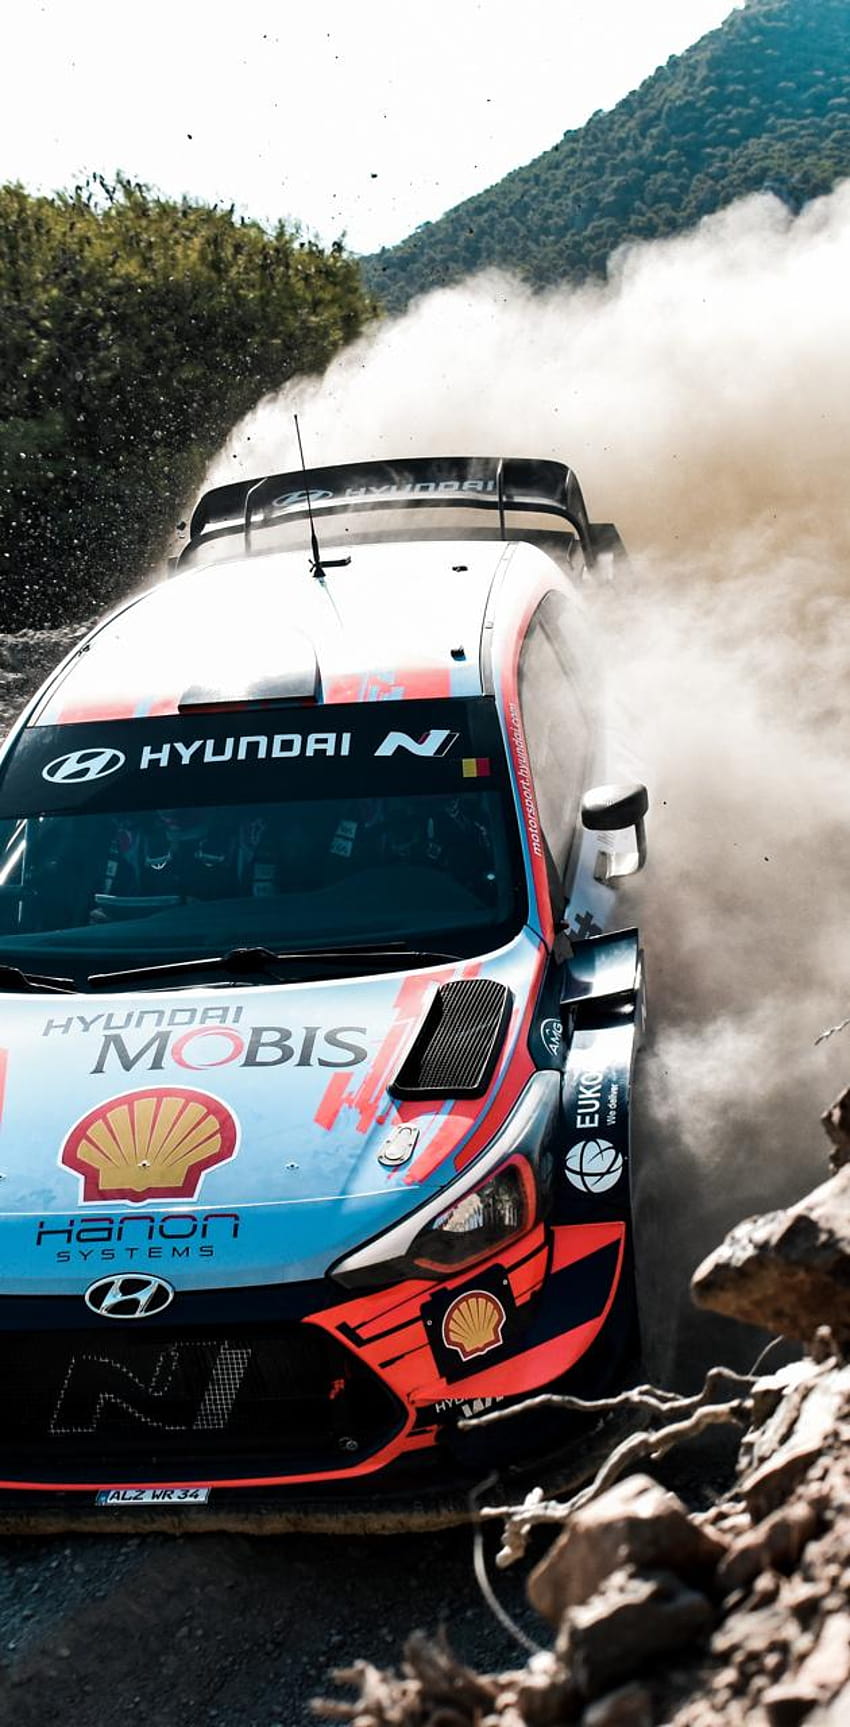 HYUNDAI WRC por Andreas_delis fondo de pantalla del teléfono